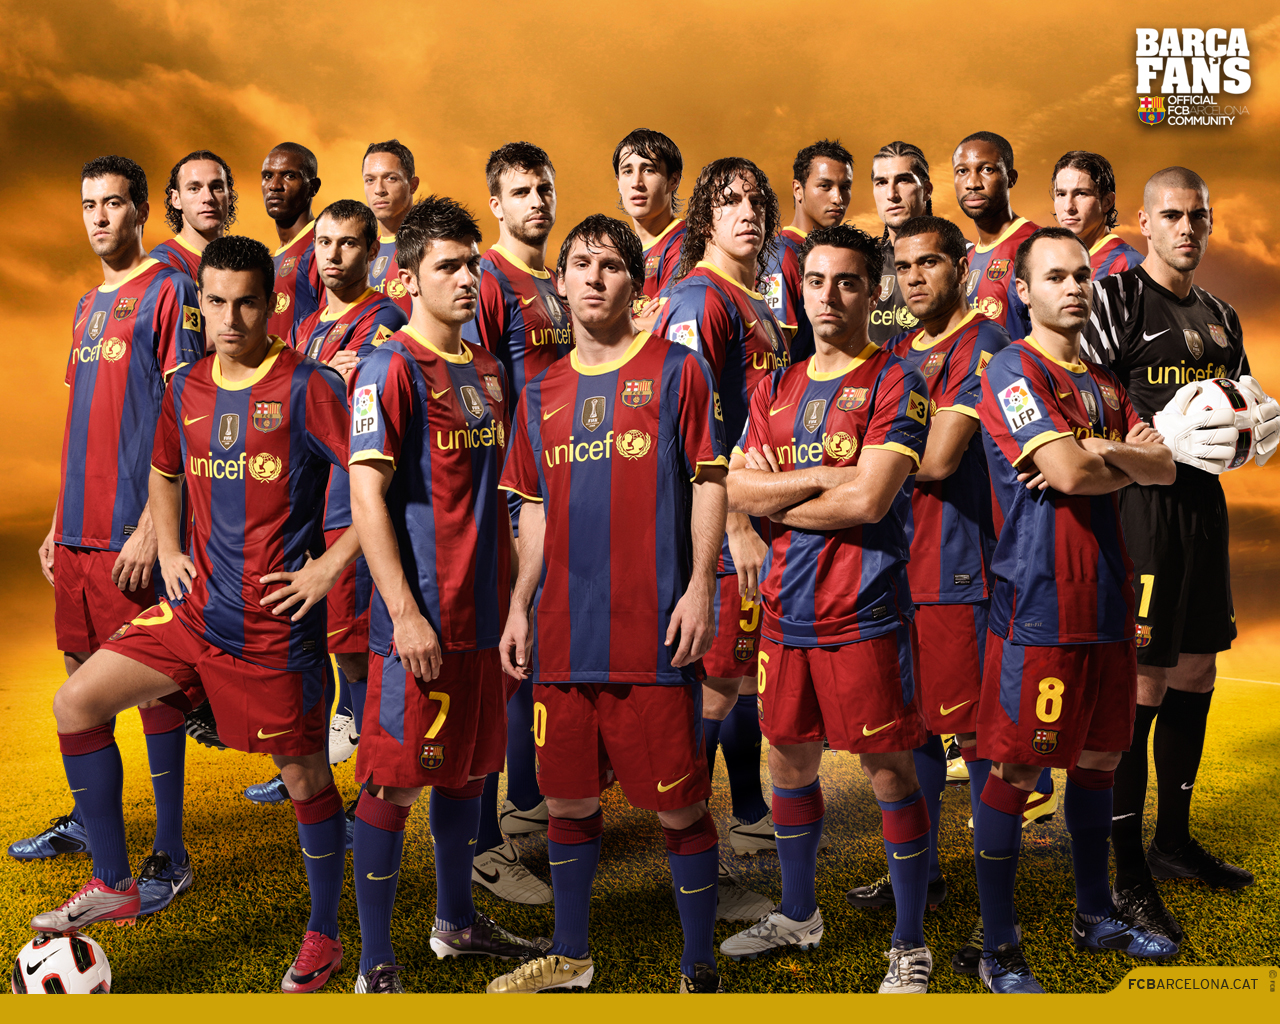 http://2.bp.blogspot.com/-0fAYgKcCJGs/UPElEtndgnI/AAAAAAAAFk0/x4GOonc-qNU/s1600/FC+Barcelona+Team+Cool+HD+Wallpapers+2013_4.jpg